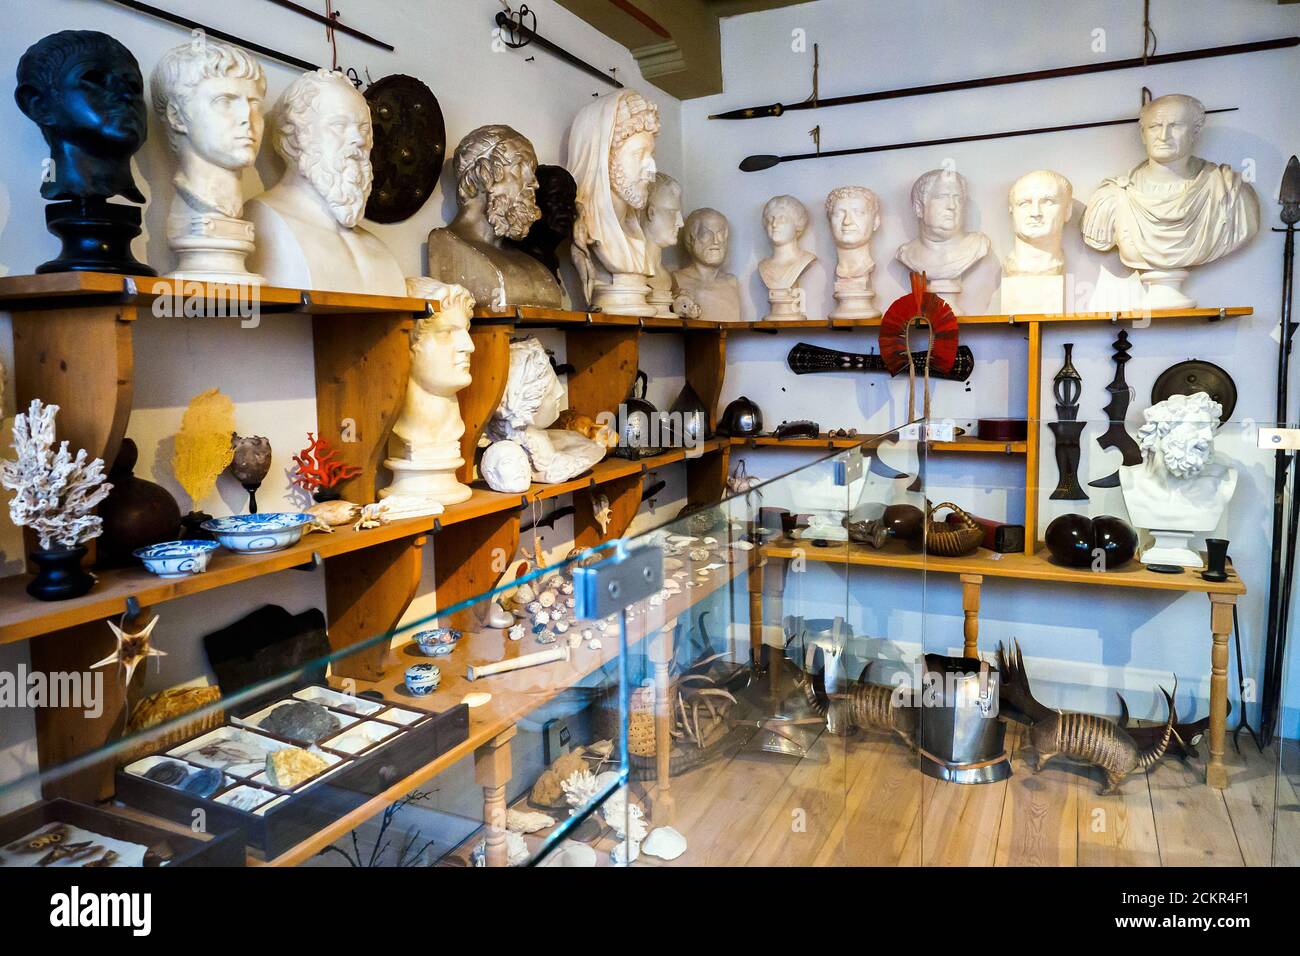 Les objets dans le grand studio de la Rembrandthuis (maison de Rembrandt) Museum - Amsterdam, Pays-Bas Banque D'Images